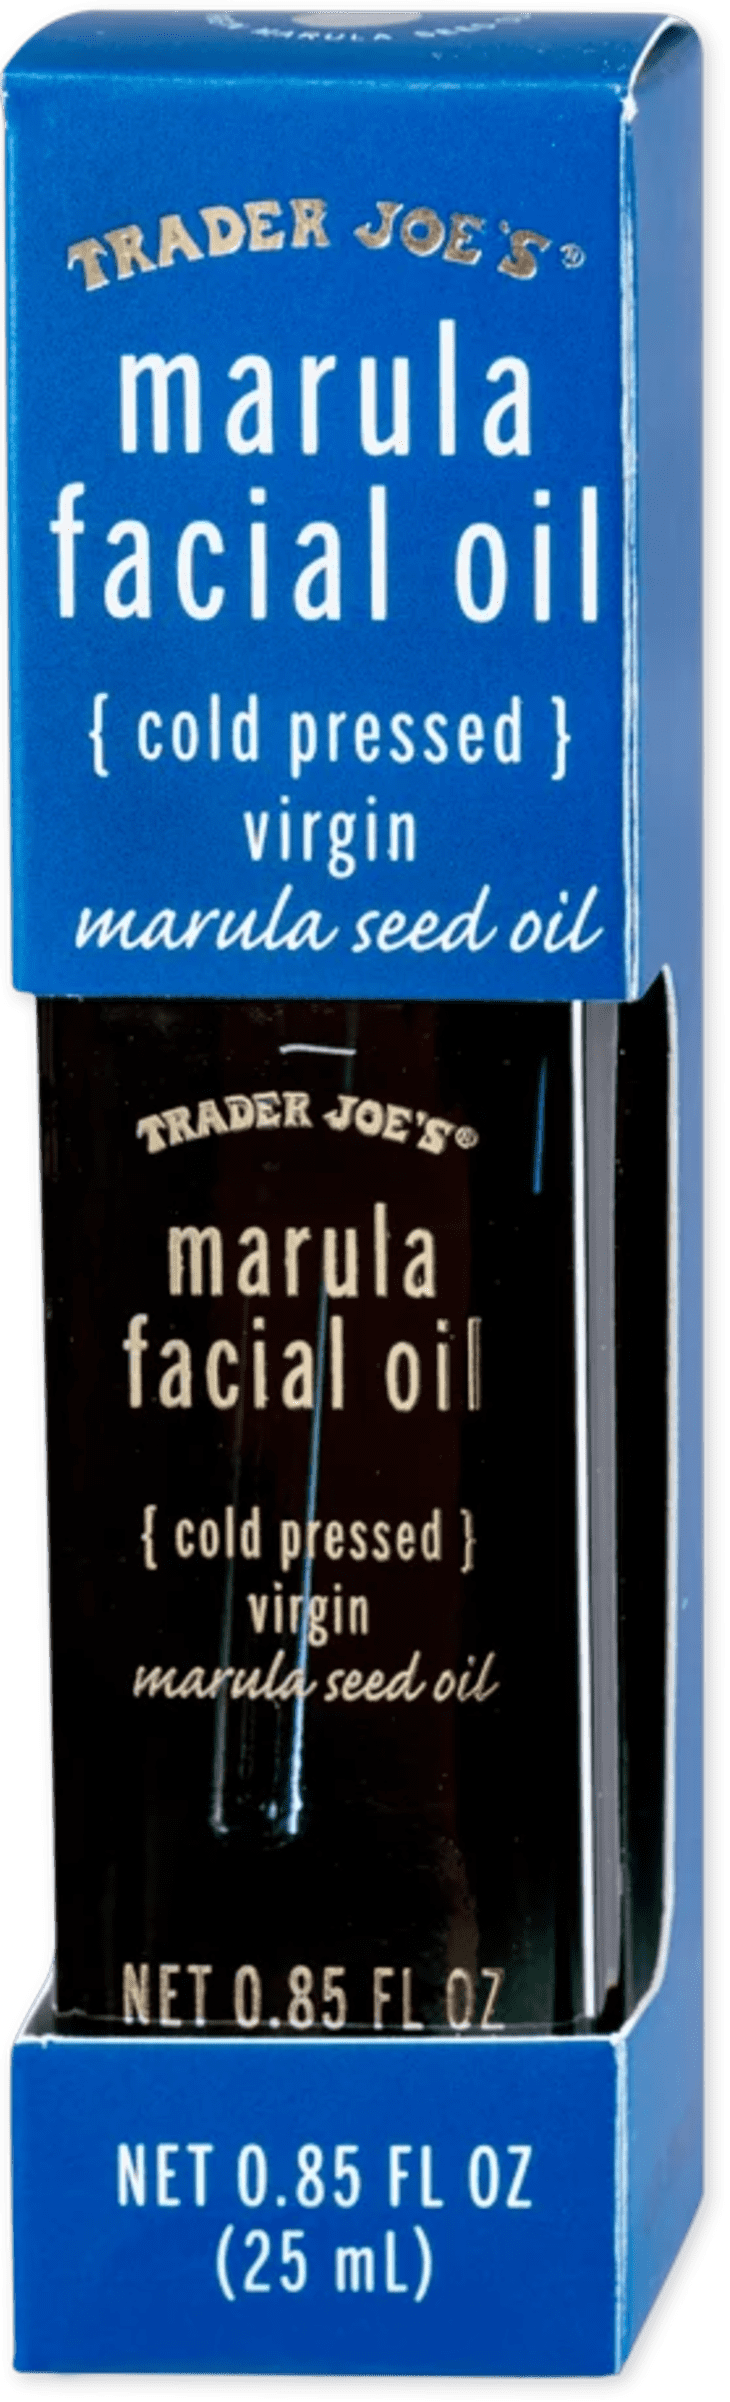 Marula Facial Oil at Trader Joe's